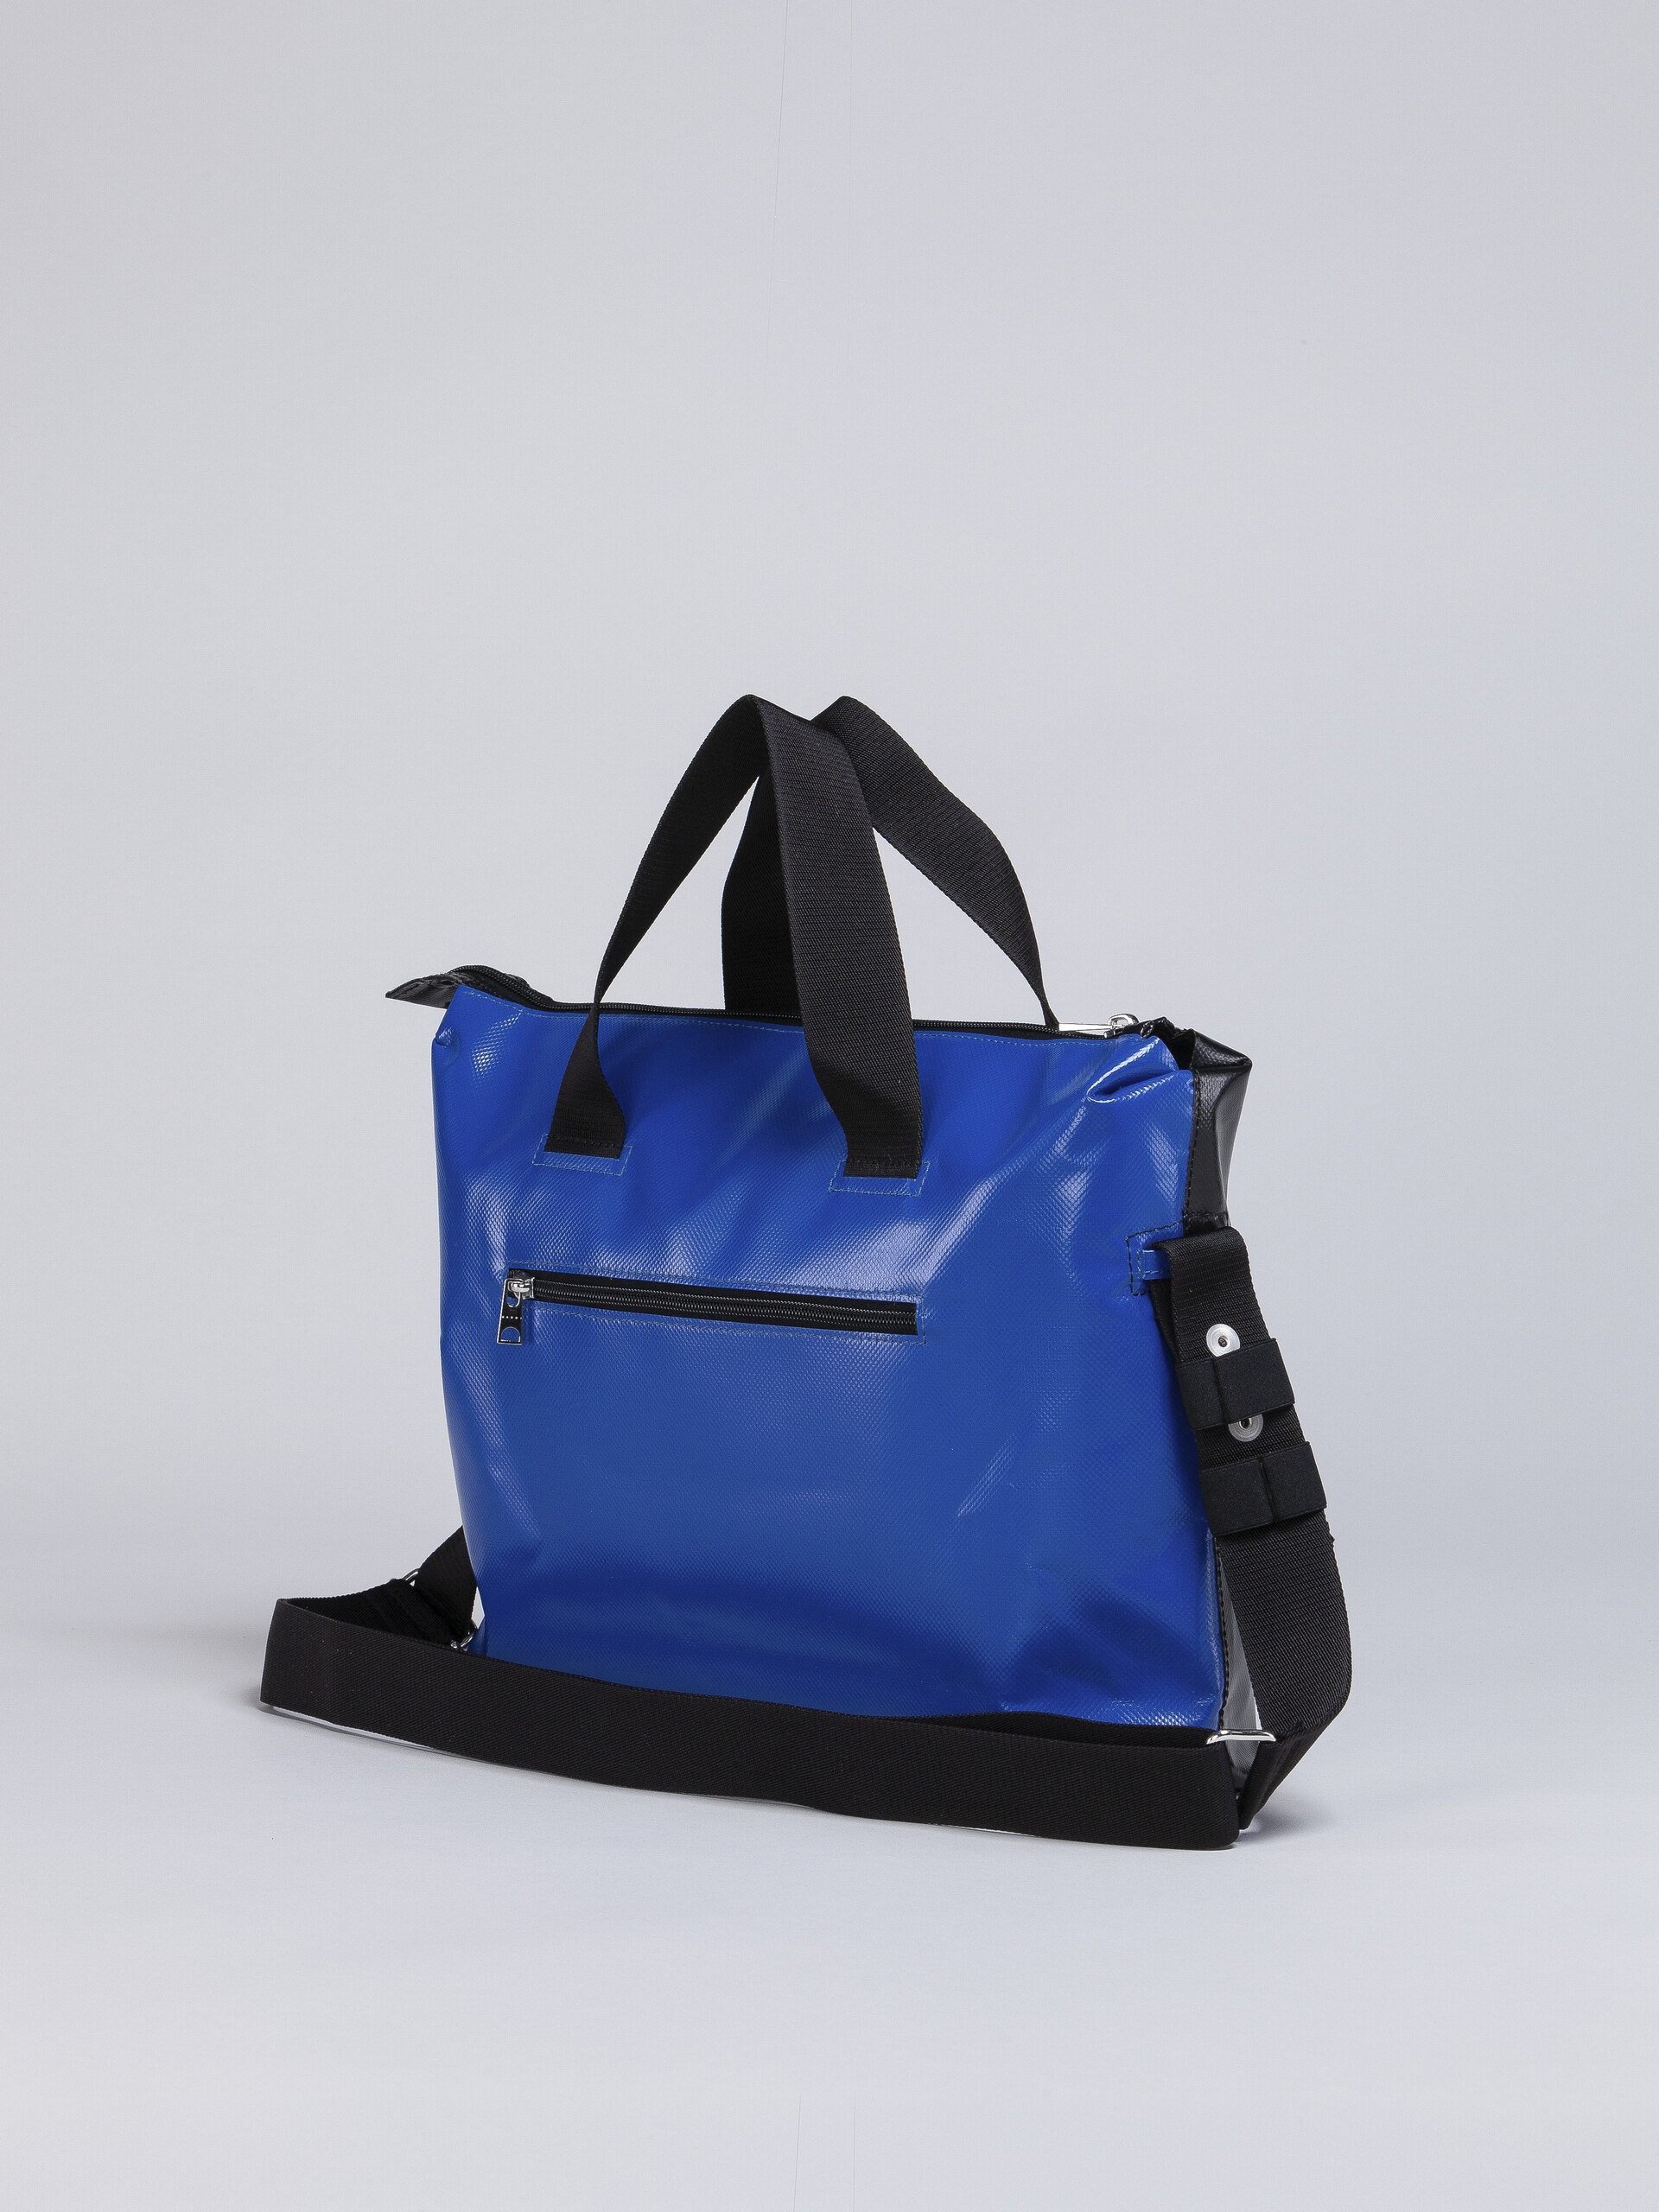 TRIBECA Tasche in Schwarz und Blau - Handtaschen - Image 3